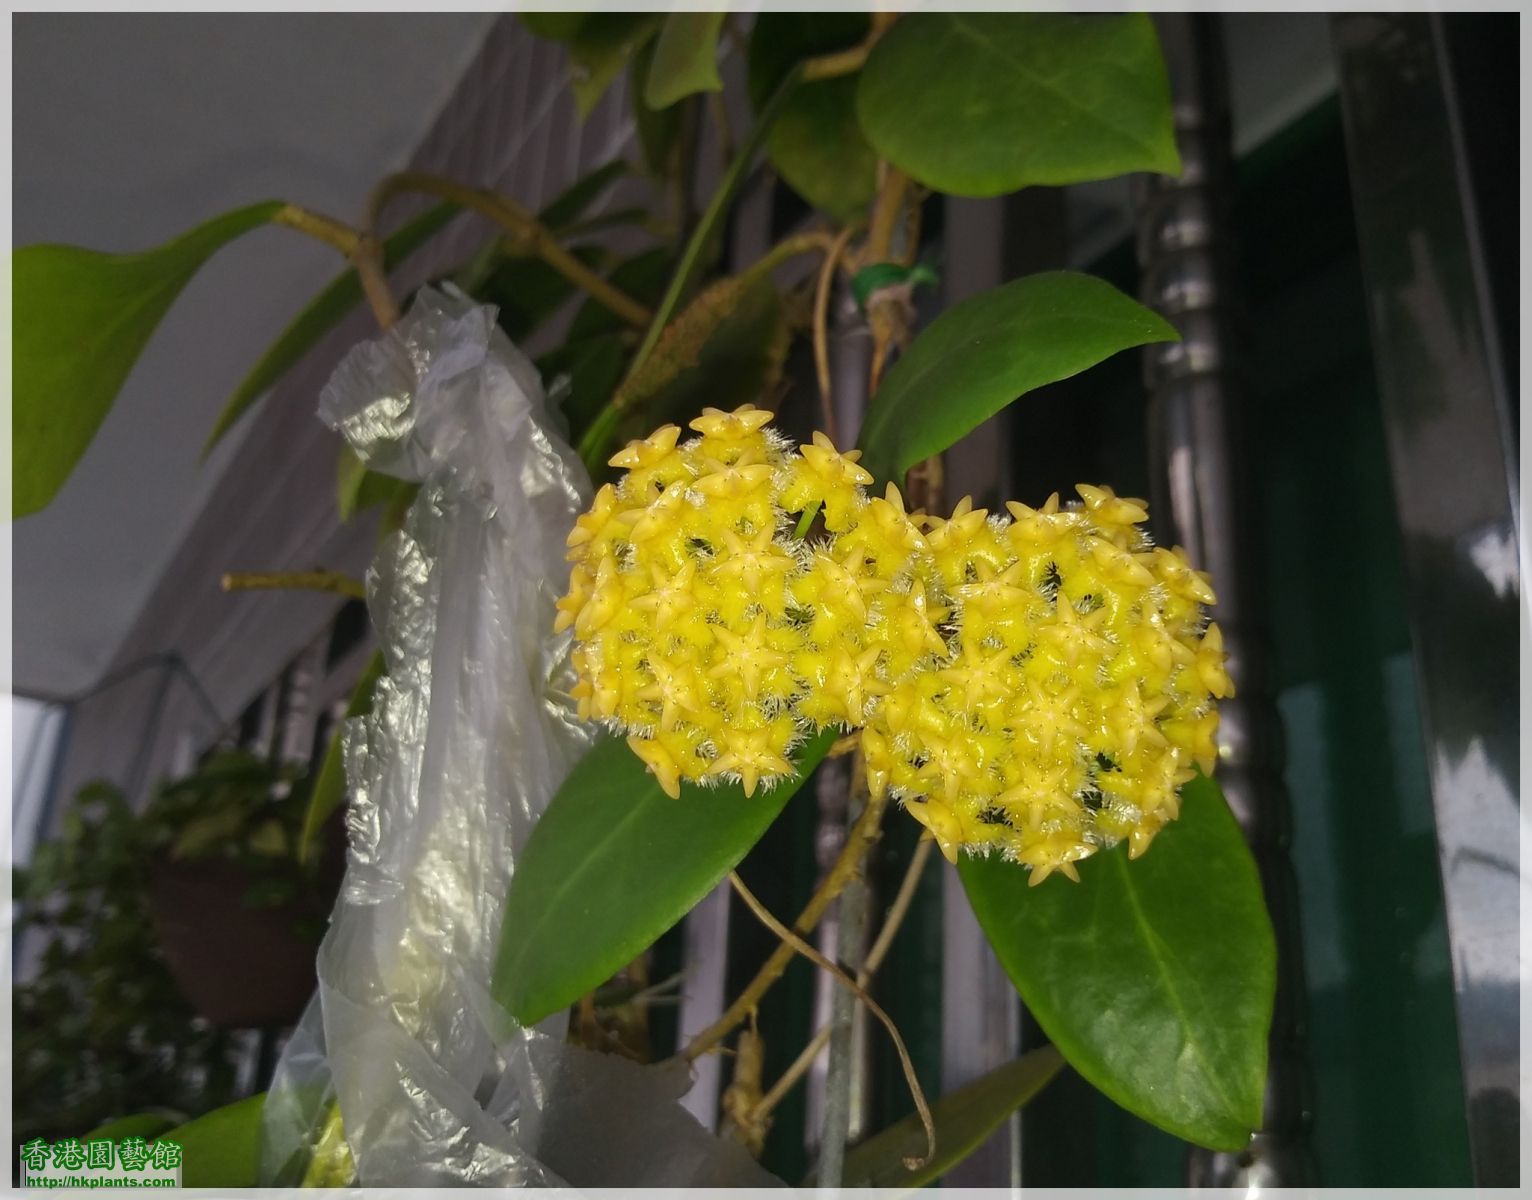 Hoya Mindorensis Yellow Corona-2018-018.jpg